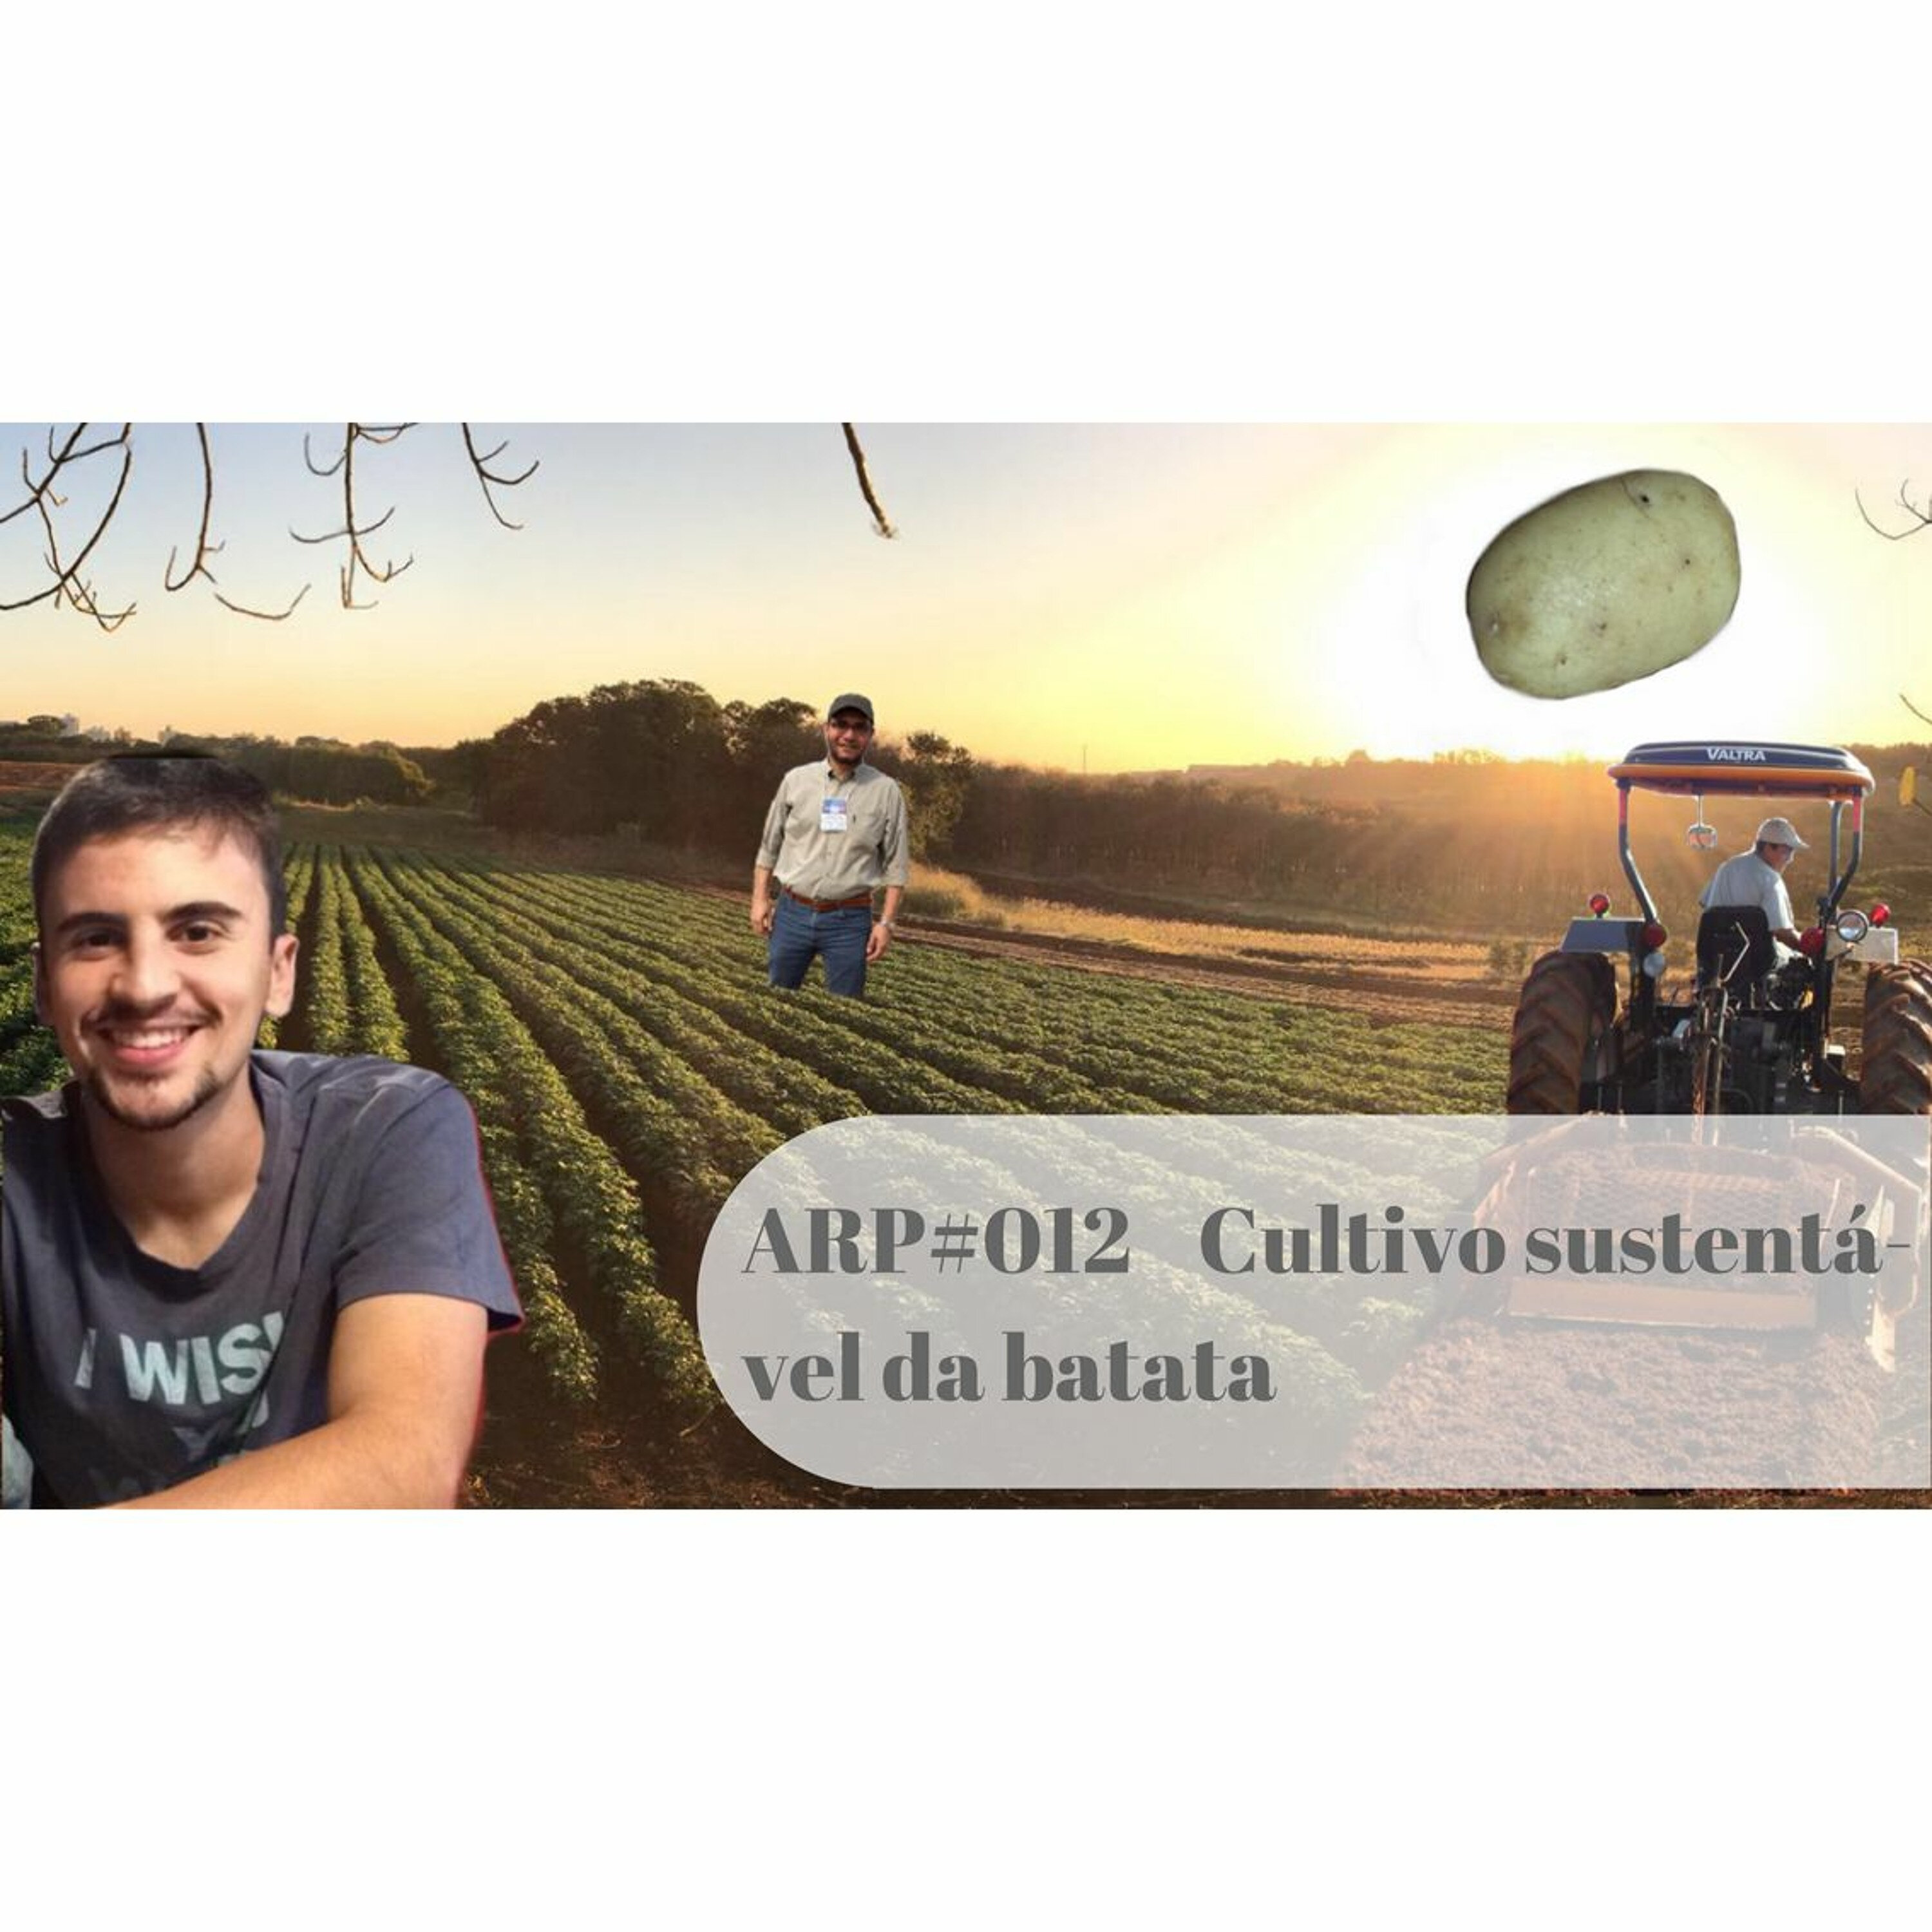 ARP#012 - Cultivo sustentável da batata